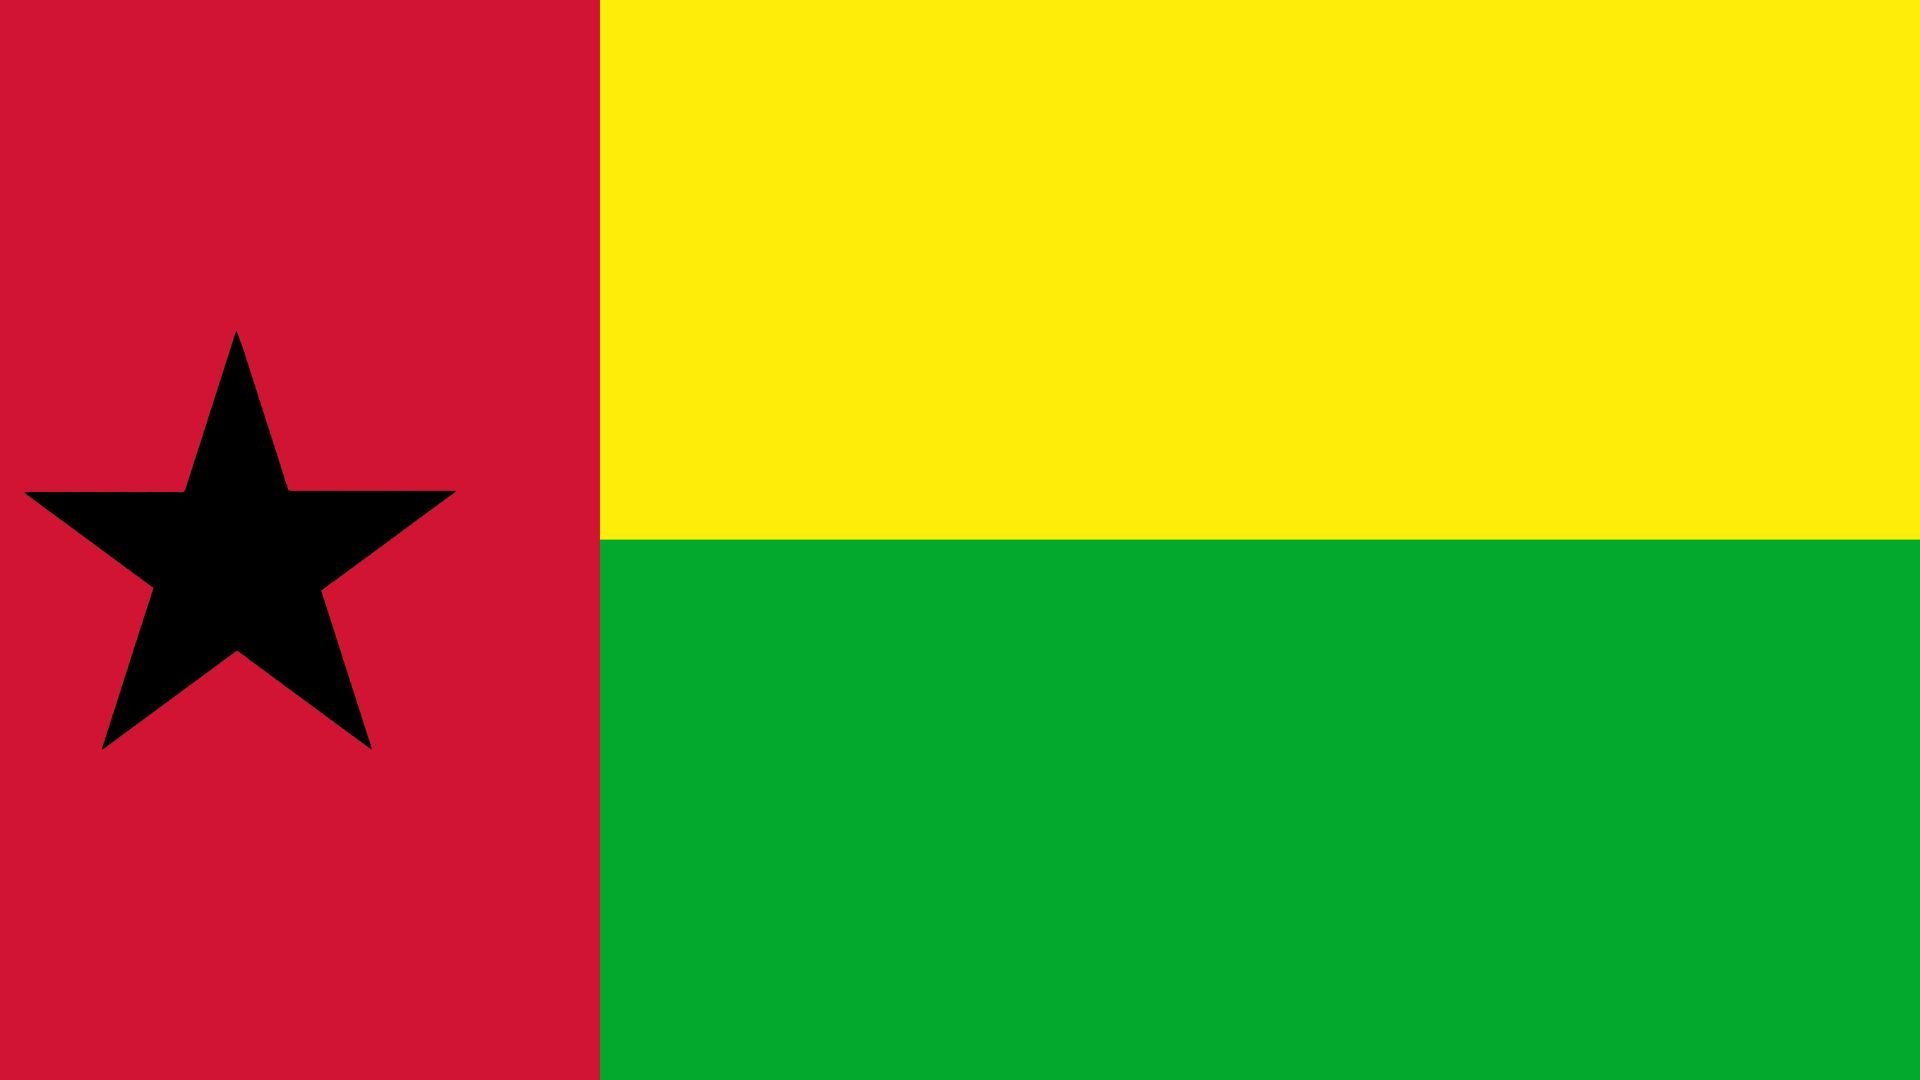 A bandeira traz uma estrela na cor preta, posicionada do lado esquerdo da tela. A estrela é um símbolo de unidade africano. As cores são vermelho, amarelo e verde. A cor amarela representa o sol, a cor verde remete à esperança e a cor vermelha representa o sangue derramado durante a longa luta pela independência de Portugal.